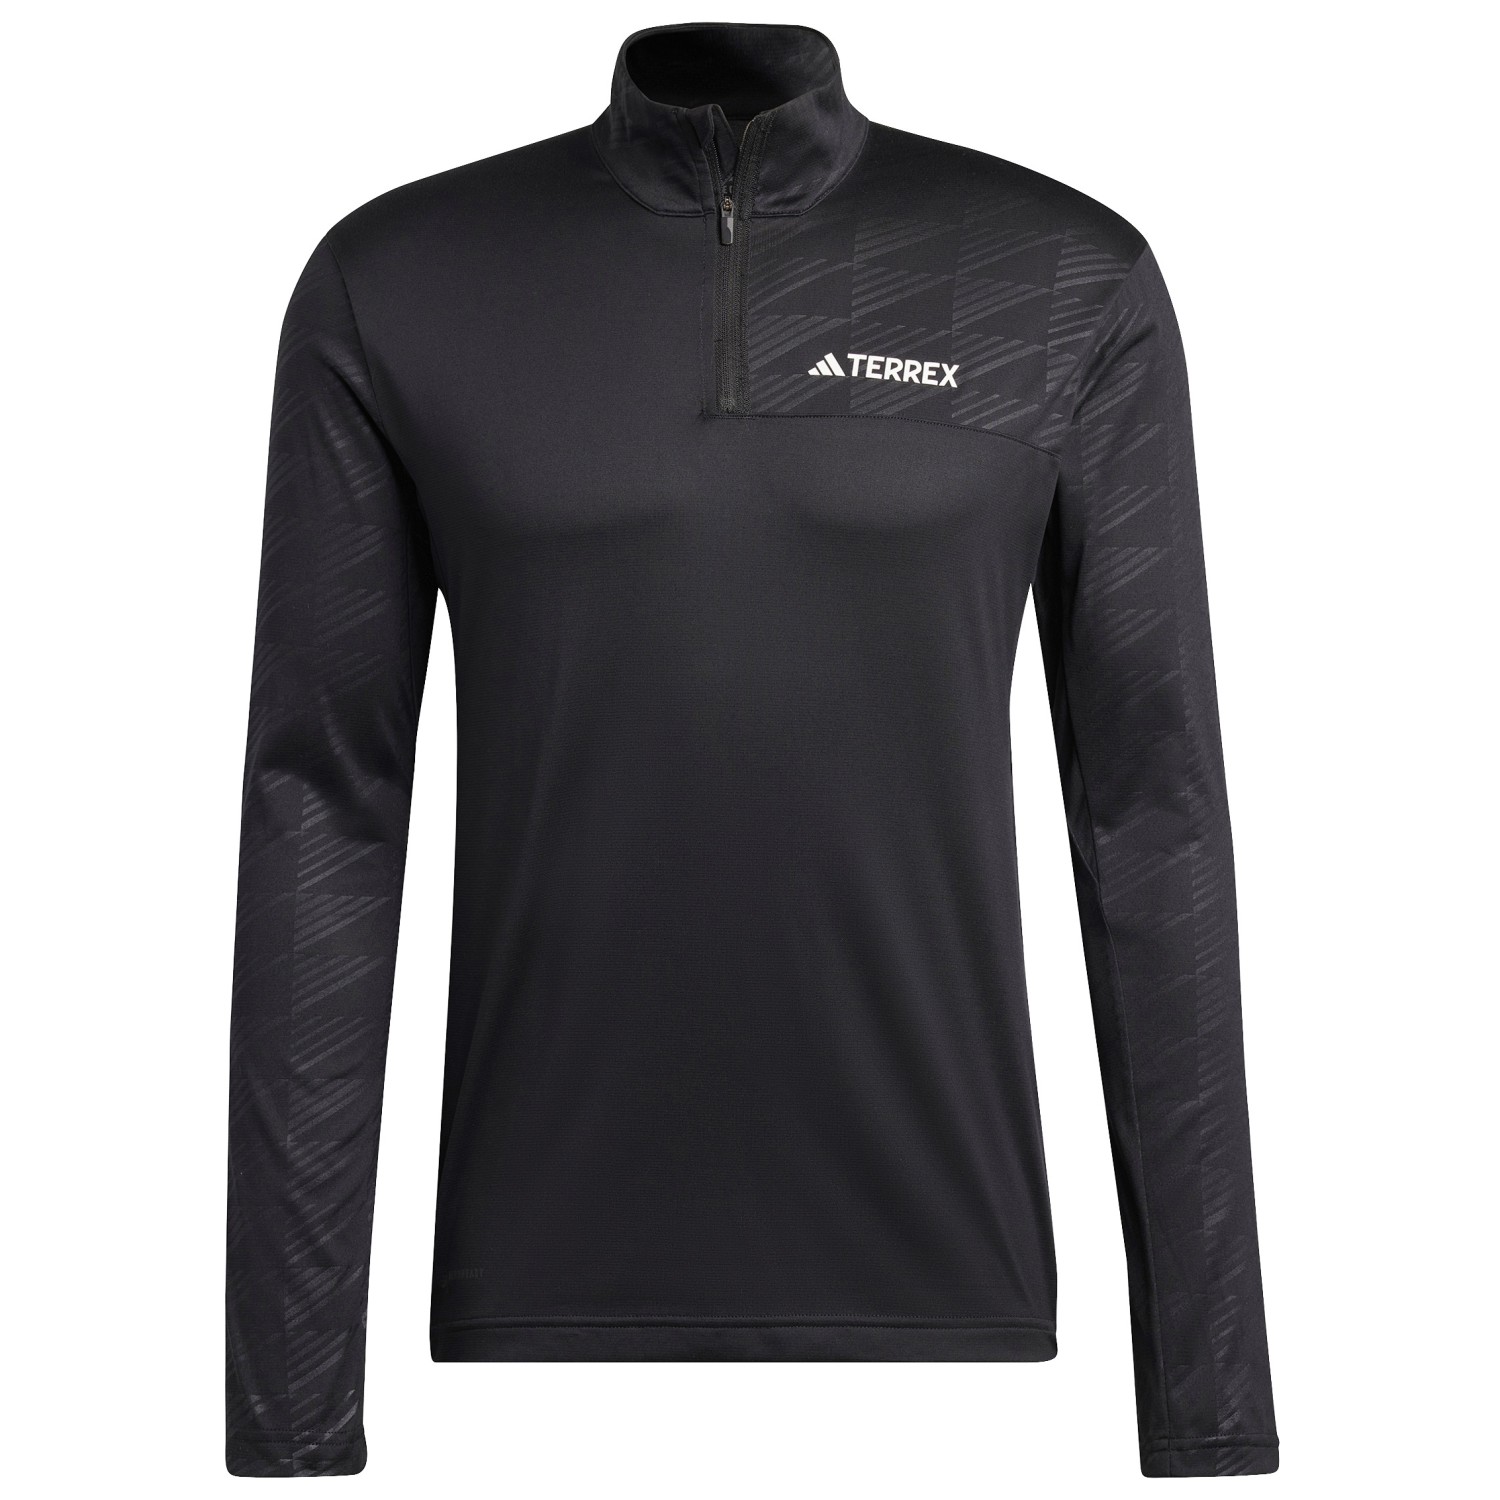 Функциональная рубашка Adidas Terrex Terrex Multi Half Zip Longsleeve, черный